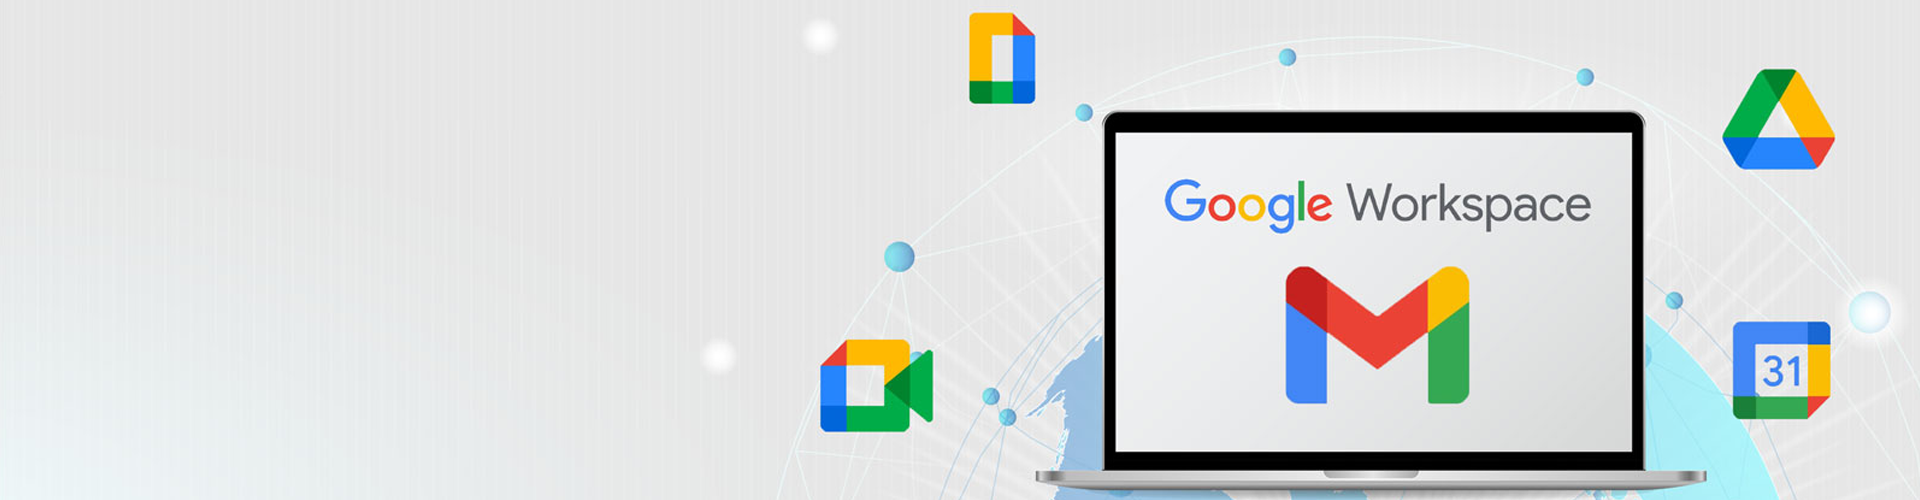 10 lợi ích của Google Workspace sẽ nâng tầm doanh nghiệp của bạn (Phần 2)